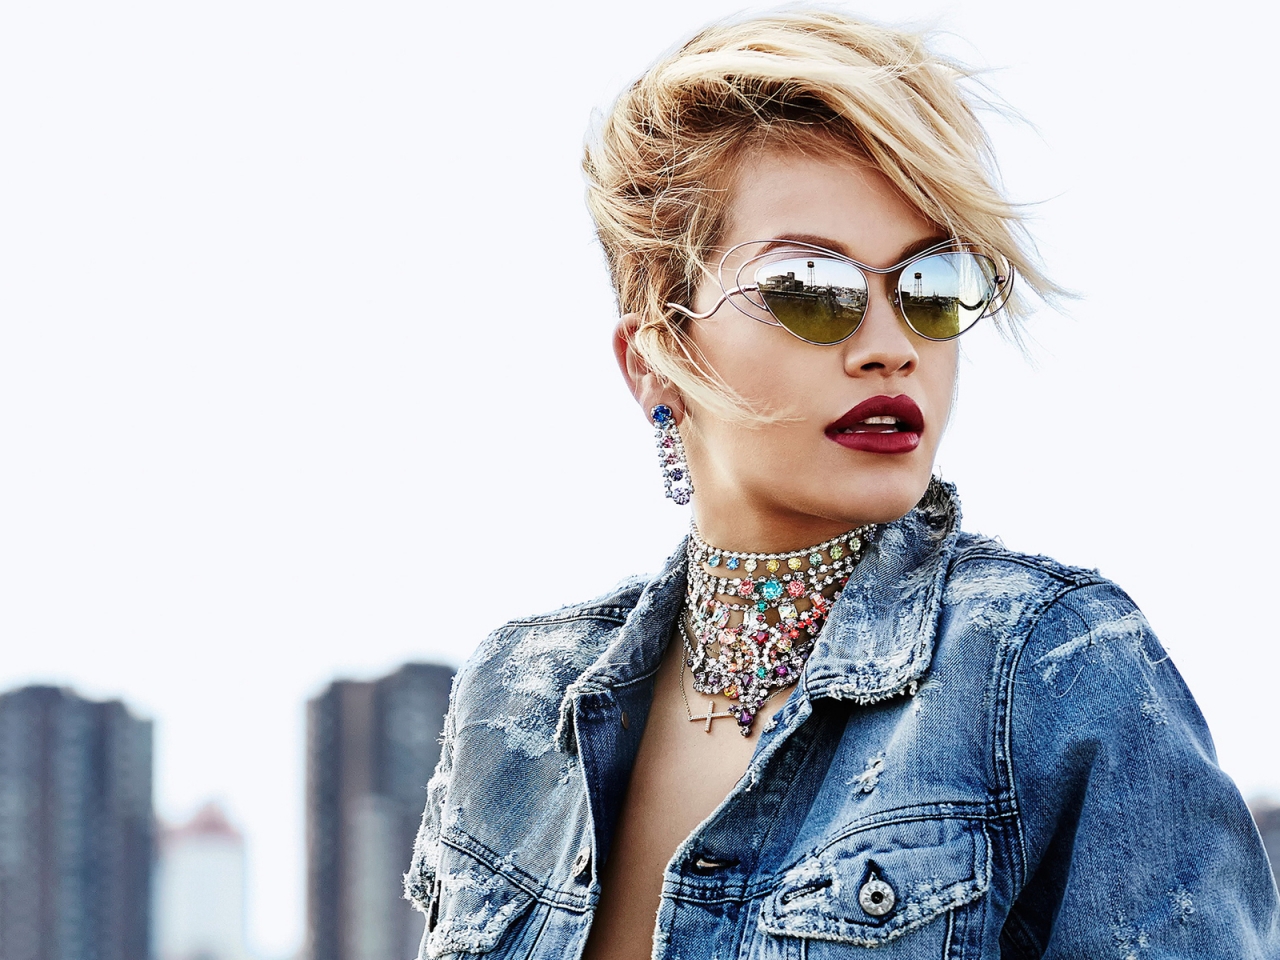 Rita Ora with Sunglasses for 1280 x 960 resolution